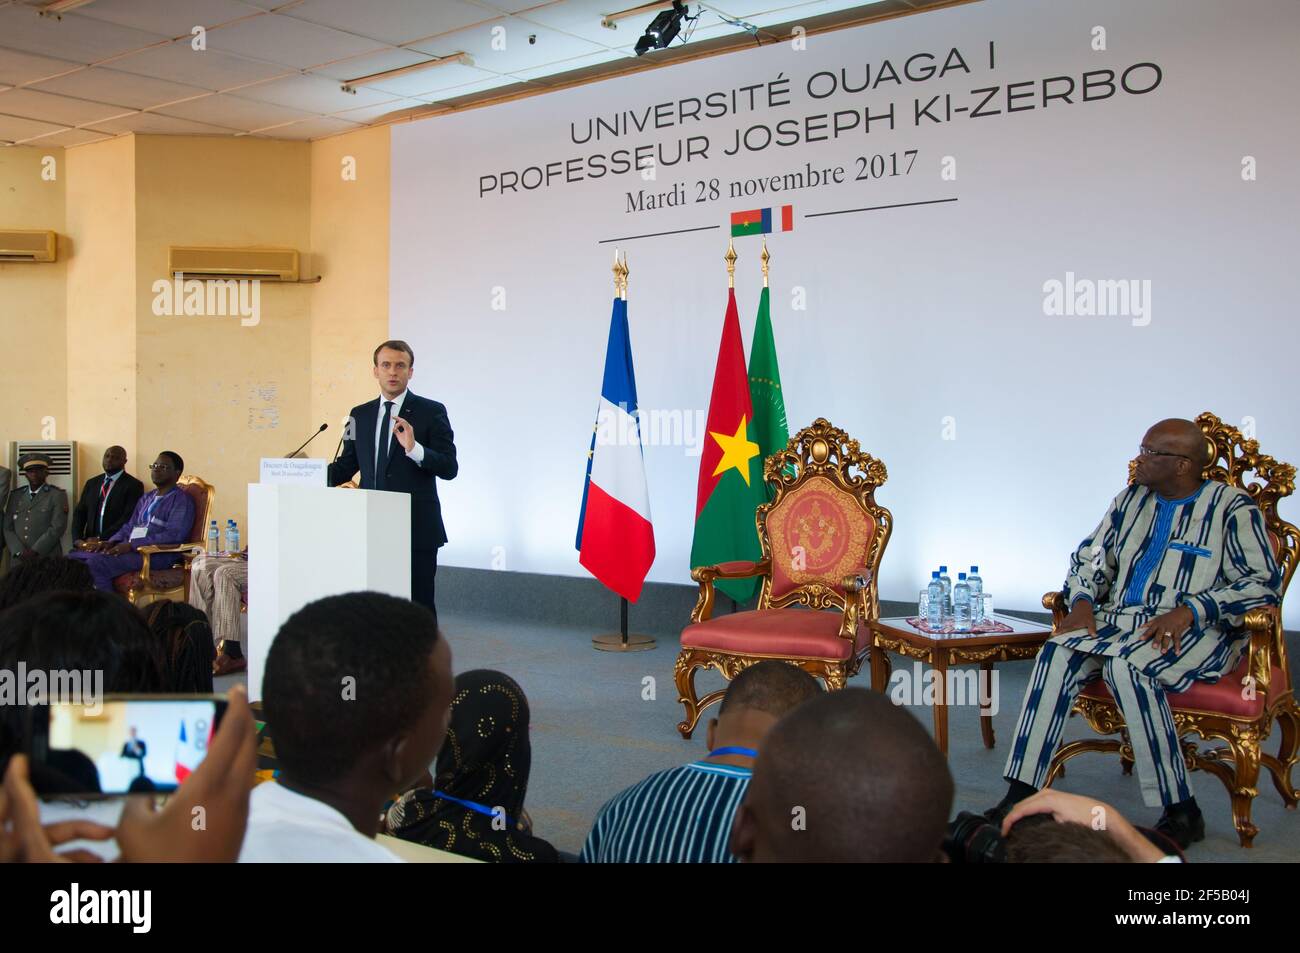 OUAGADOUGOU, BURKINA FASO - 28 NOVEMBRE 2017 : le président français Emmanuel Macron prononce son discours sur la politique africaine à l'université. Banque D'Images